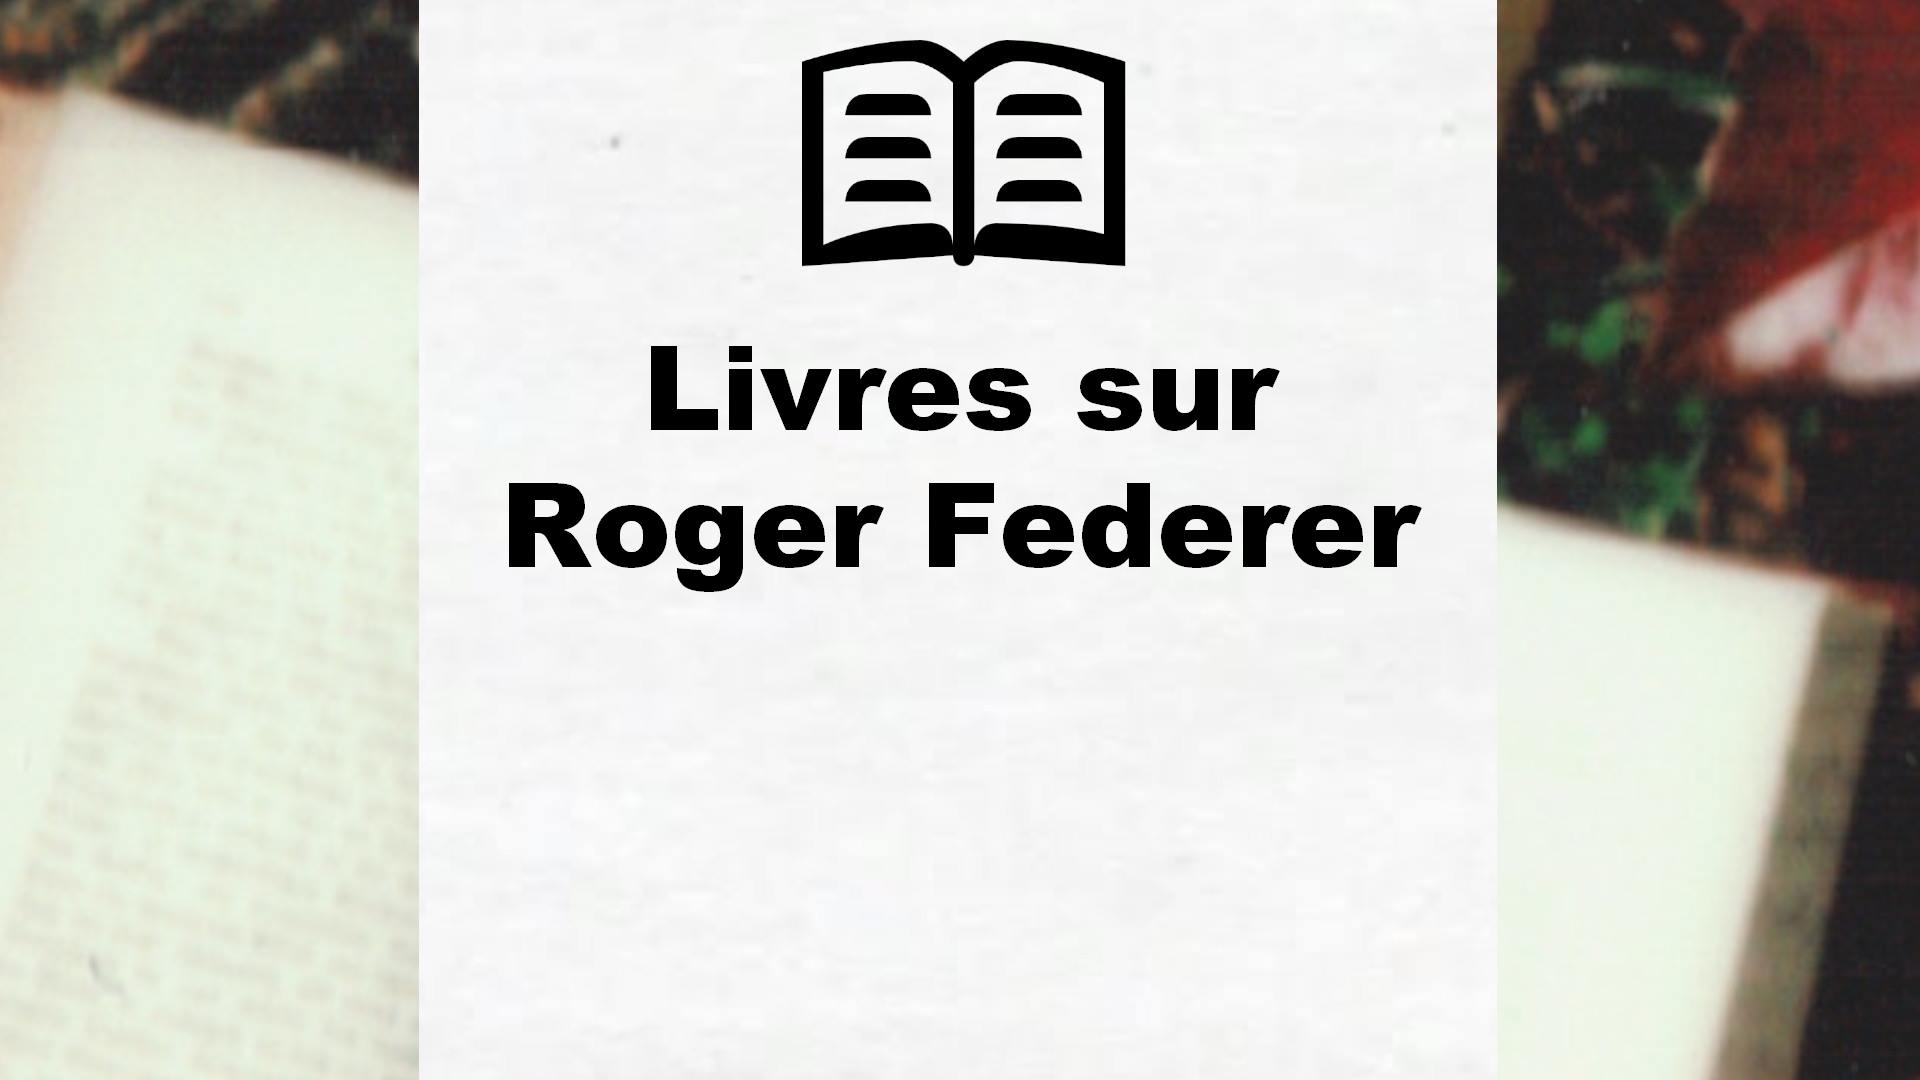 Livres sur Roger Federer